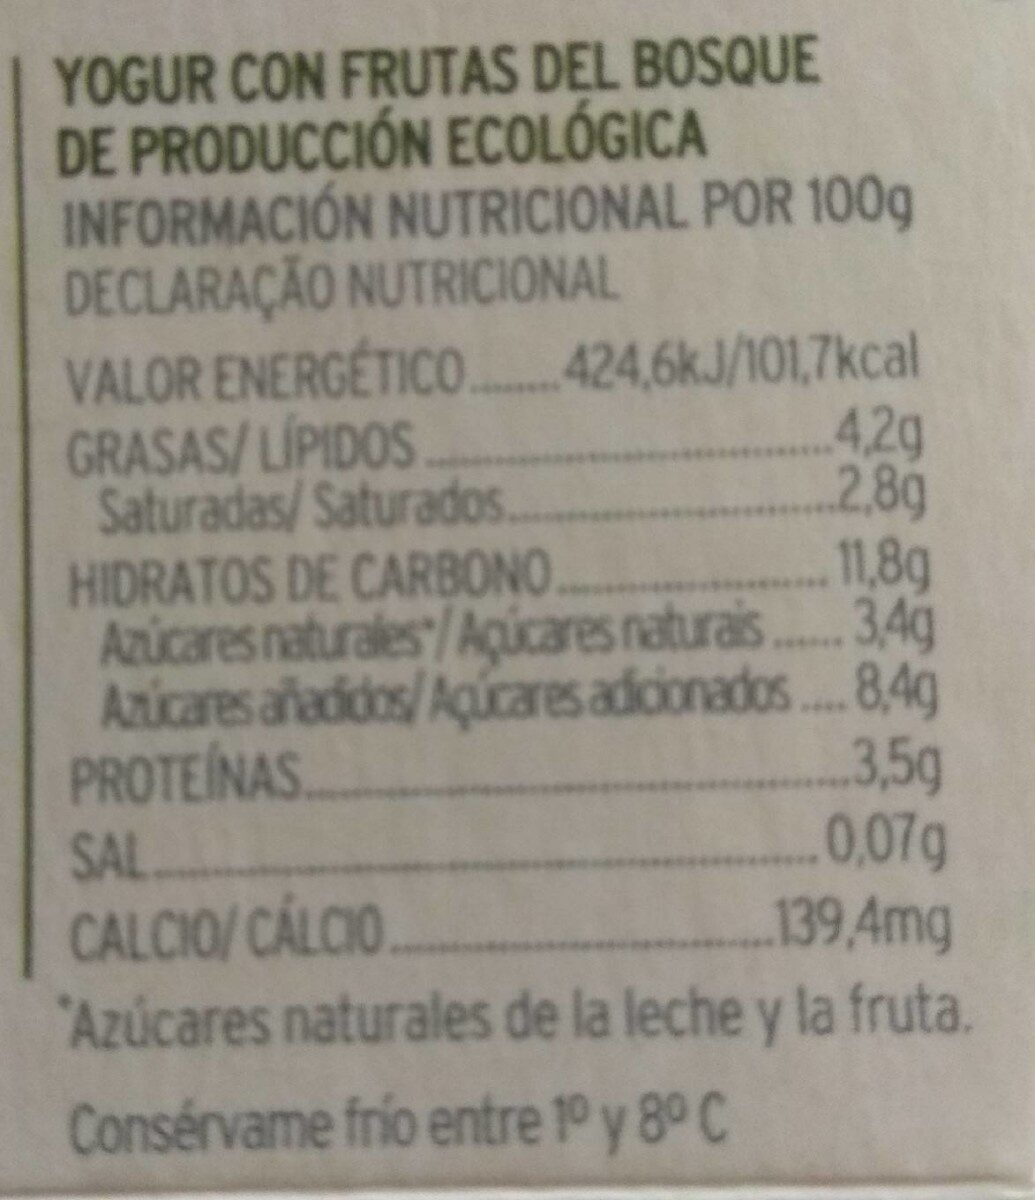 Yogur con frutas del bosque - Nutrition facts - es